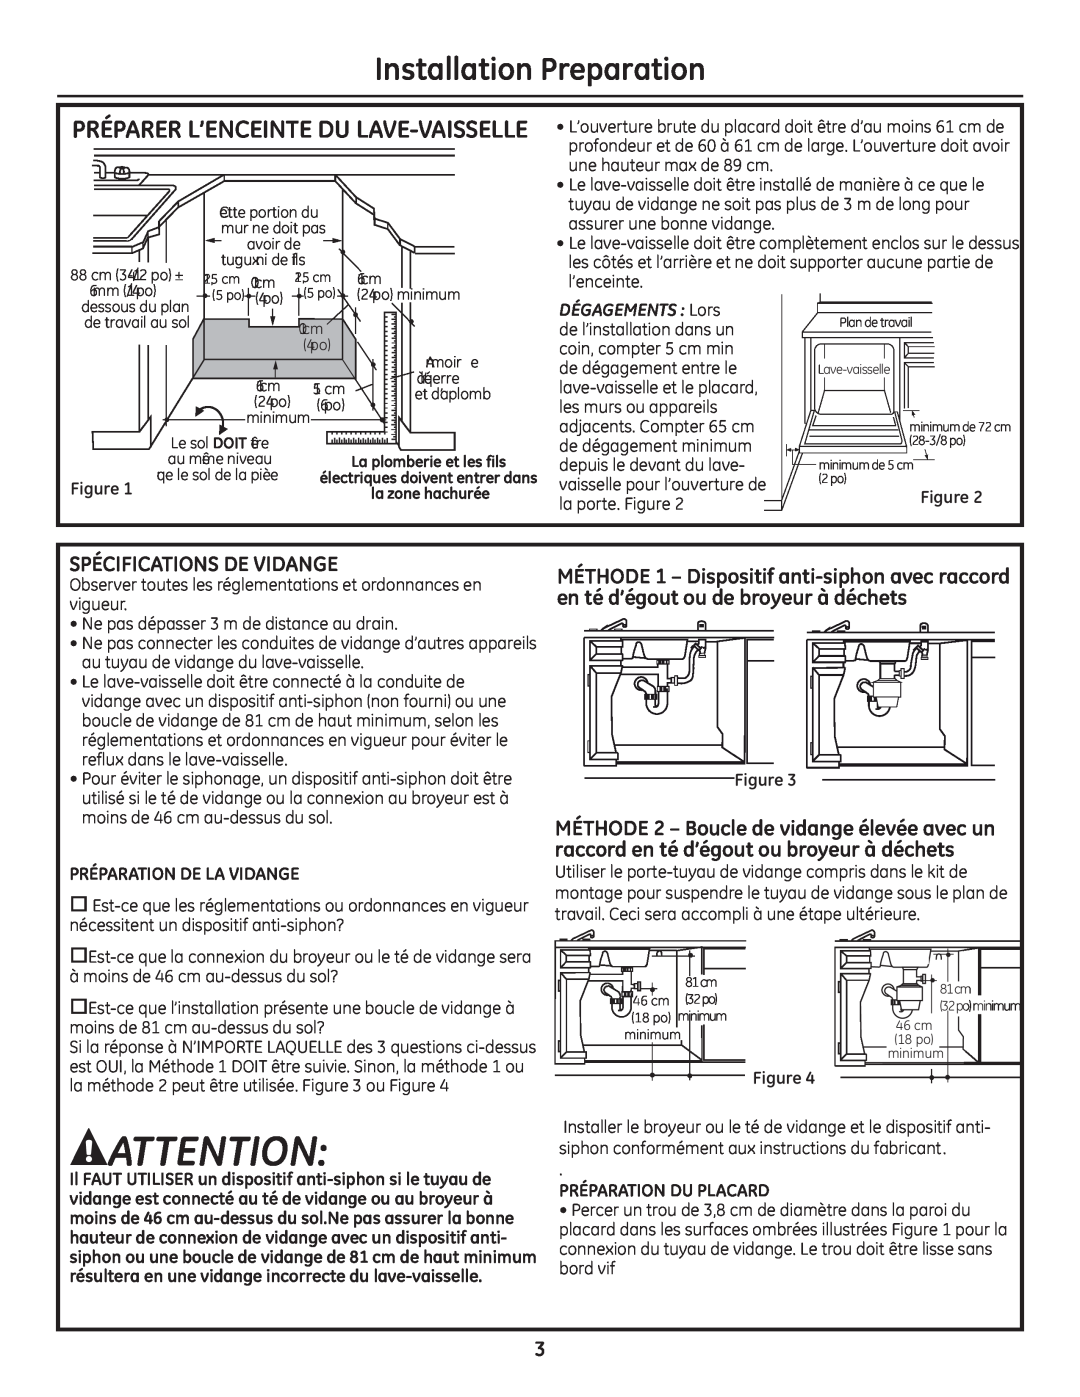 GE GE 31-30263 05-10 Installation Preparation, Préparer L’Enceinte Du Lave-Vaisselle, Spécifications De Vidange 